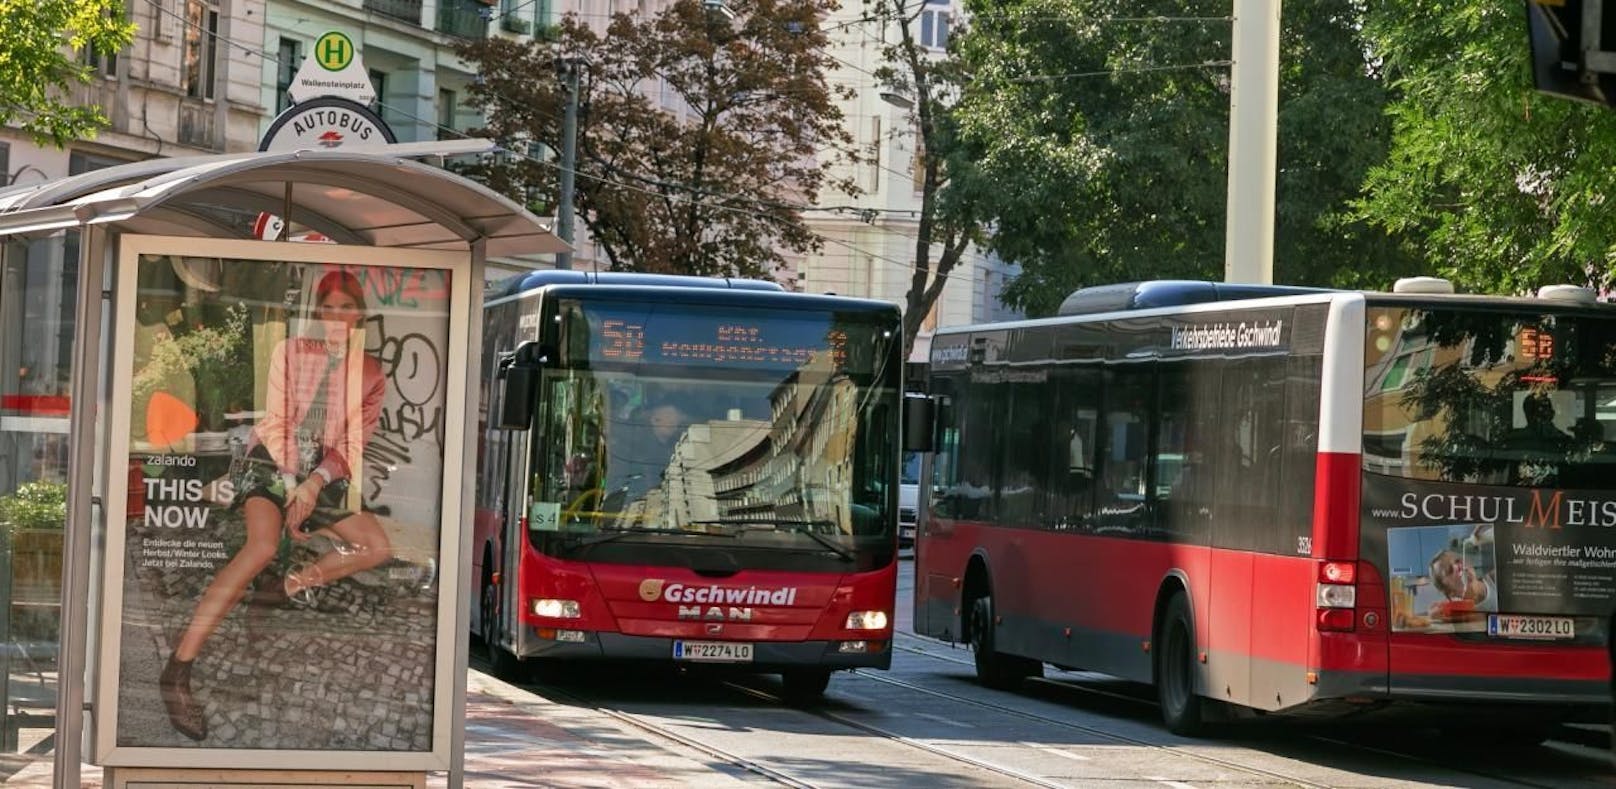 Mit Bett: Frau zieht in Wiener Bushaltestelle ein